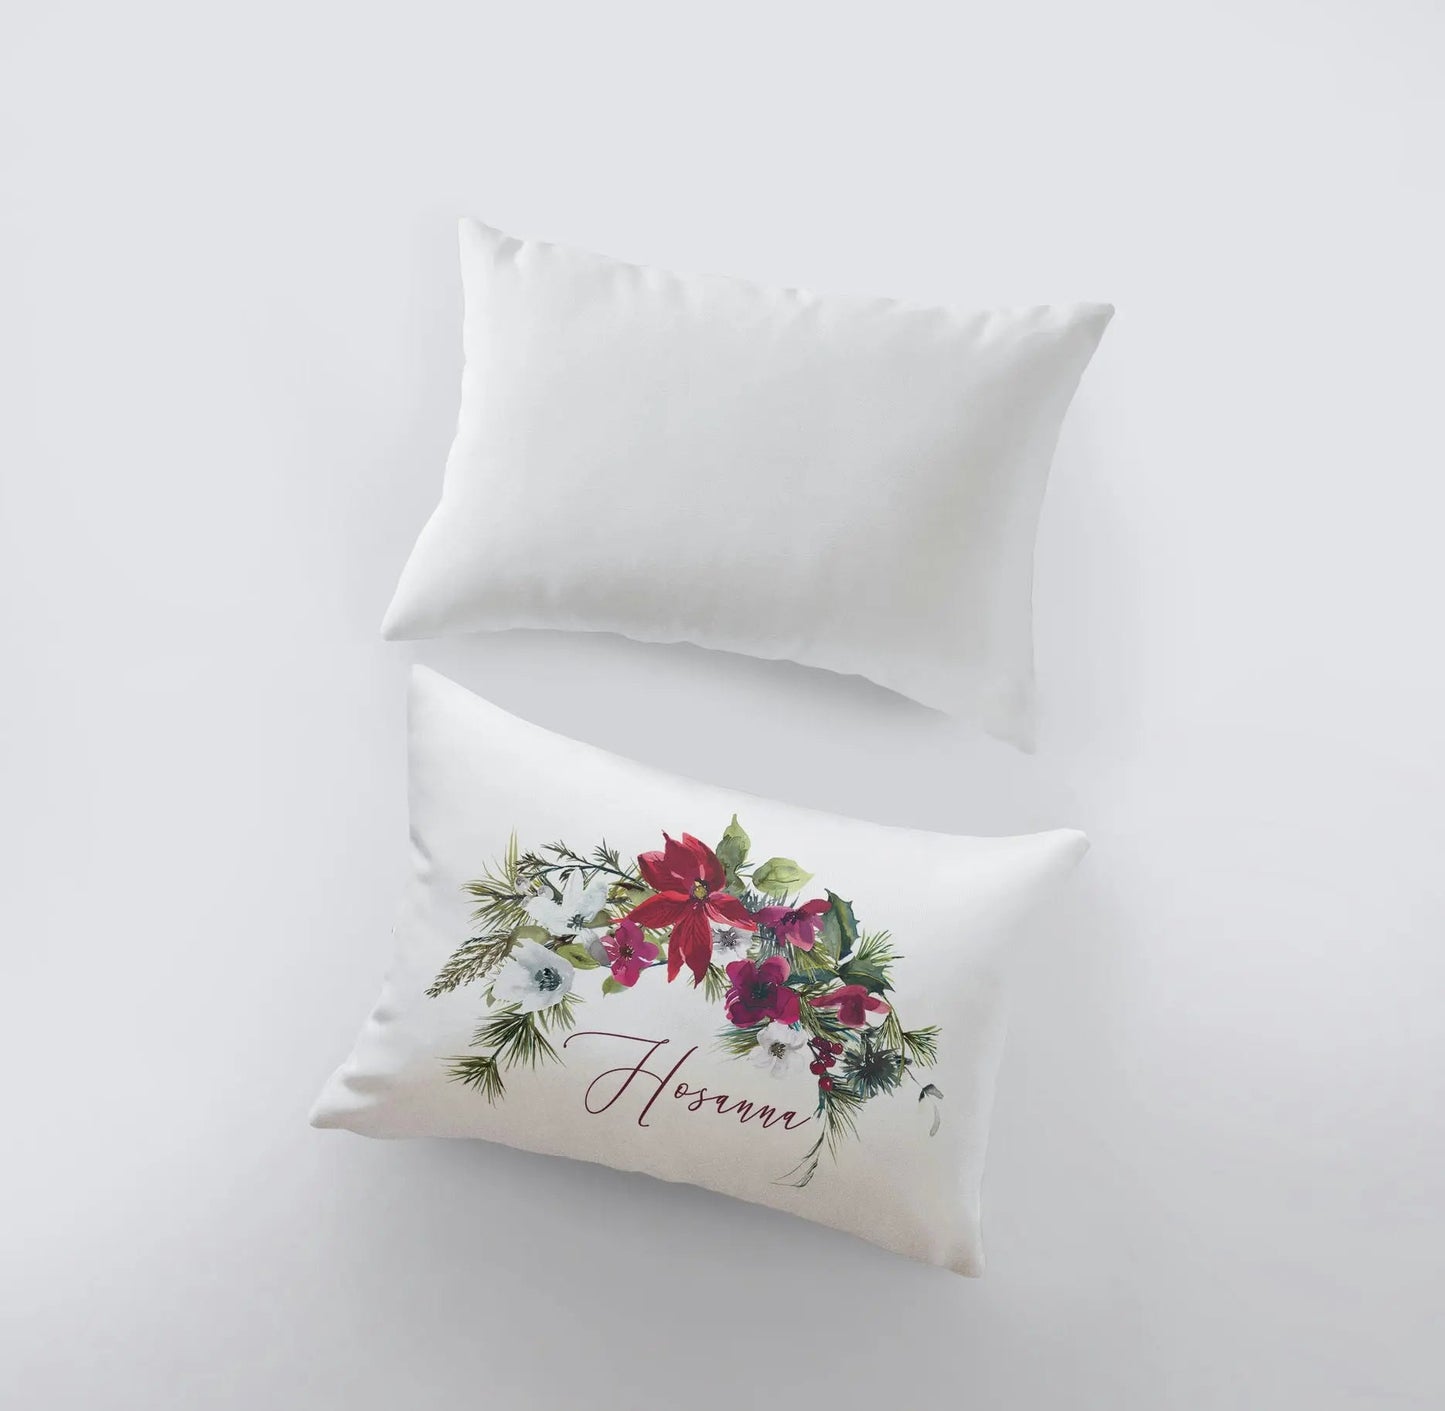 Hosanna Christmas Poinsettia Throw Pillow